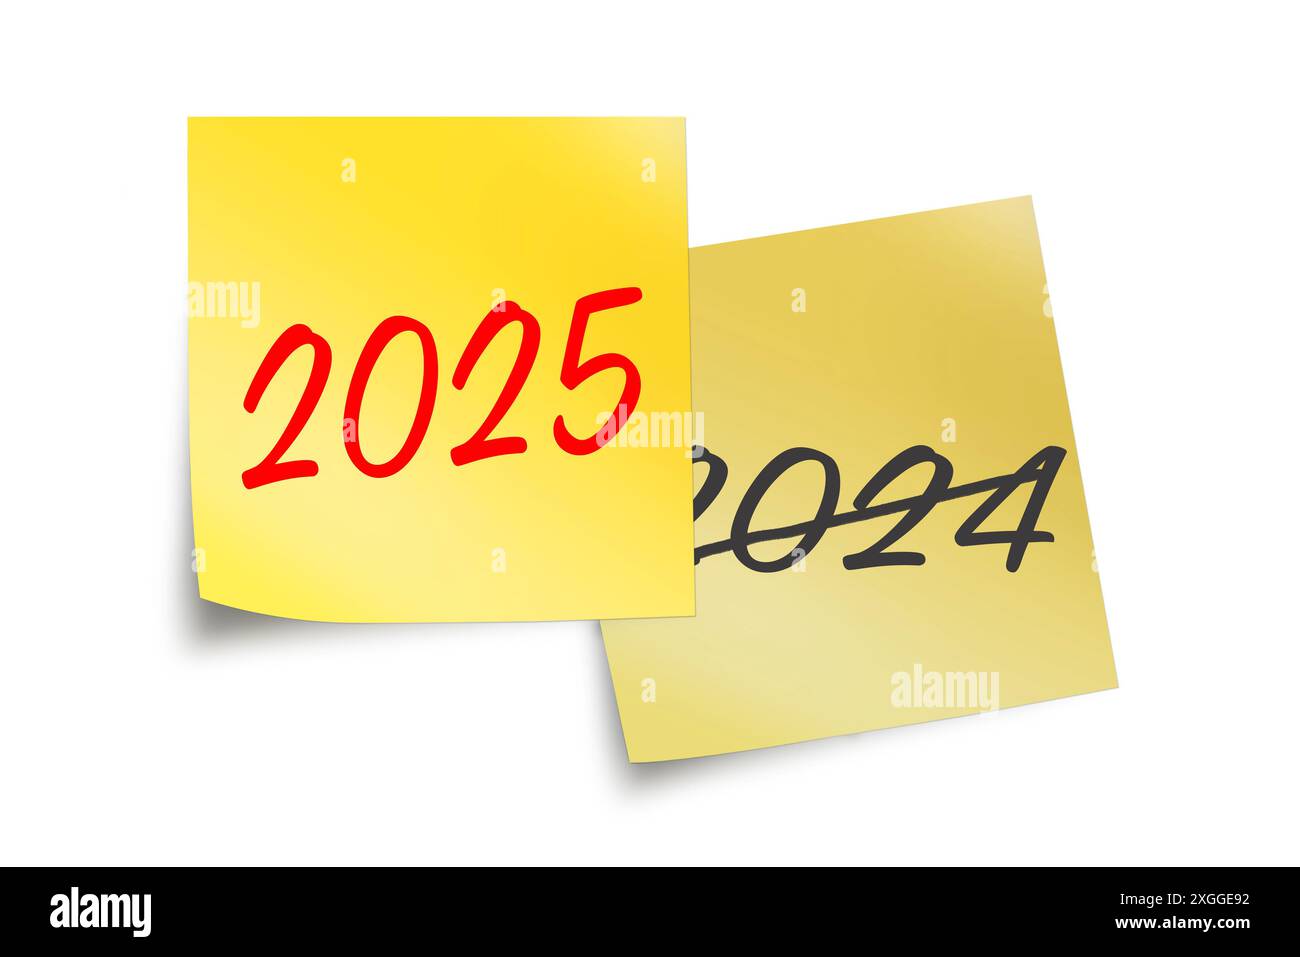 2025 et 2024 écrits sur des notes adhésives jaunes isolés sur blanc, illustration commerciale du nouvel an Banque D'Images